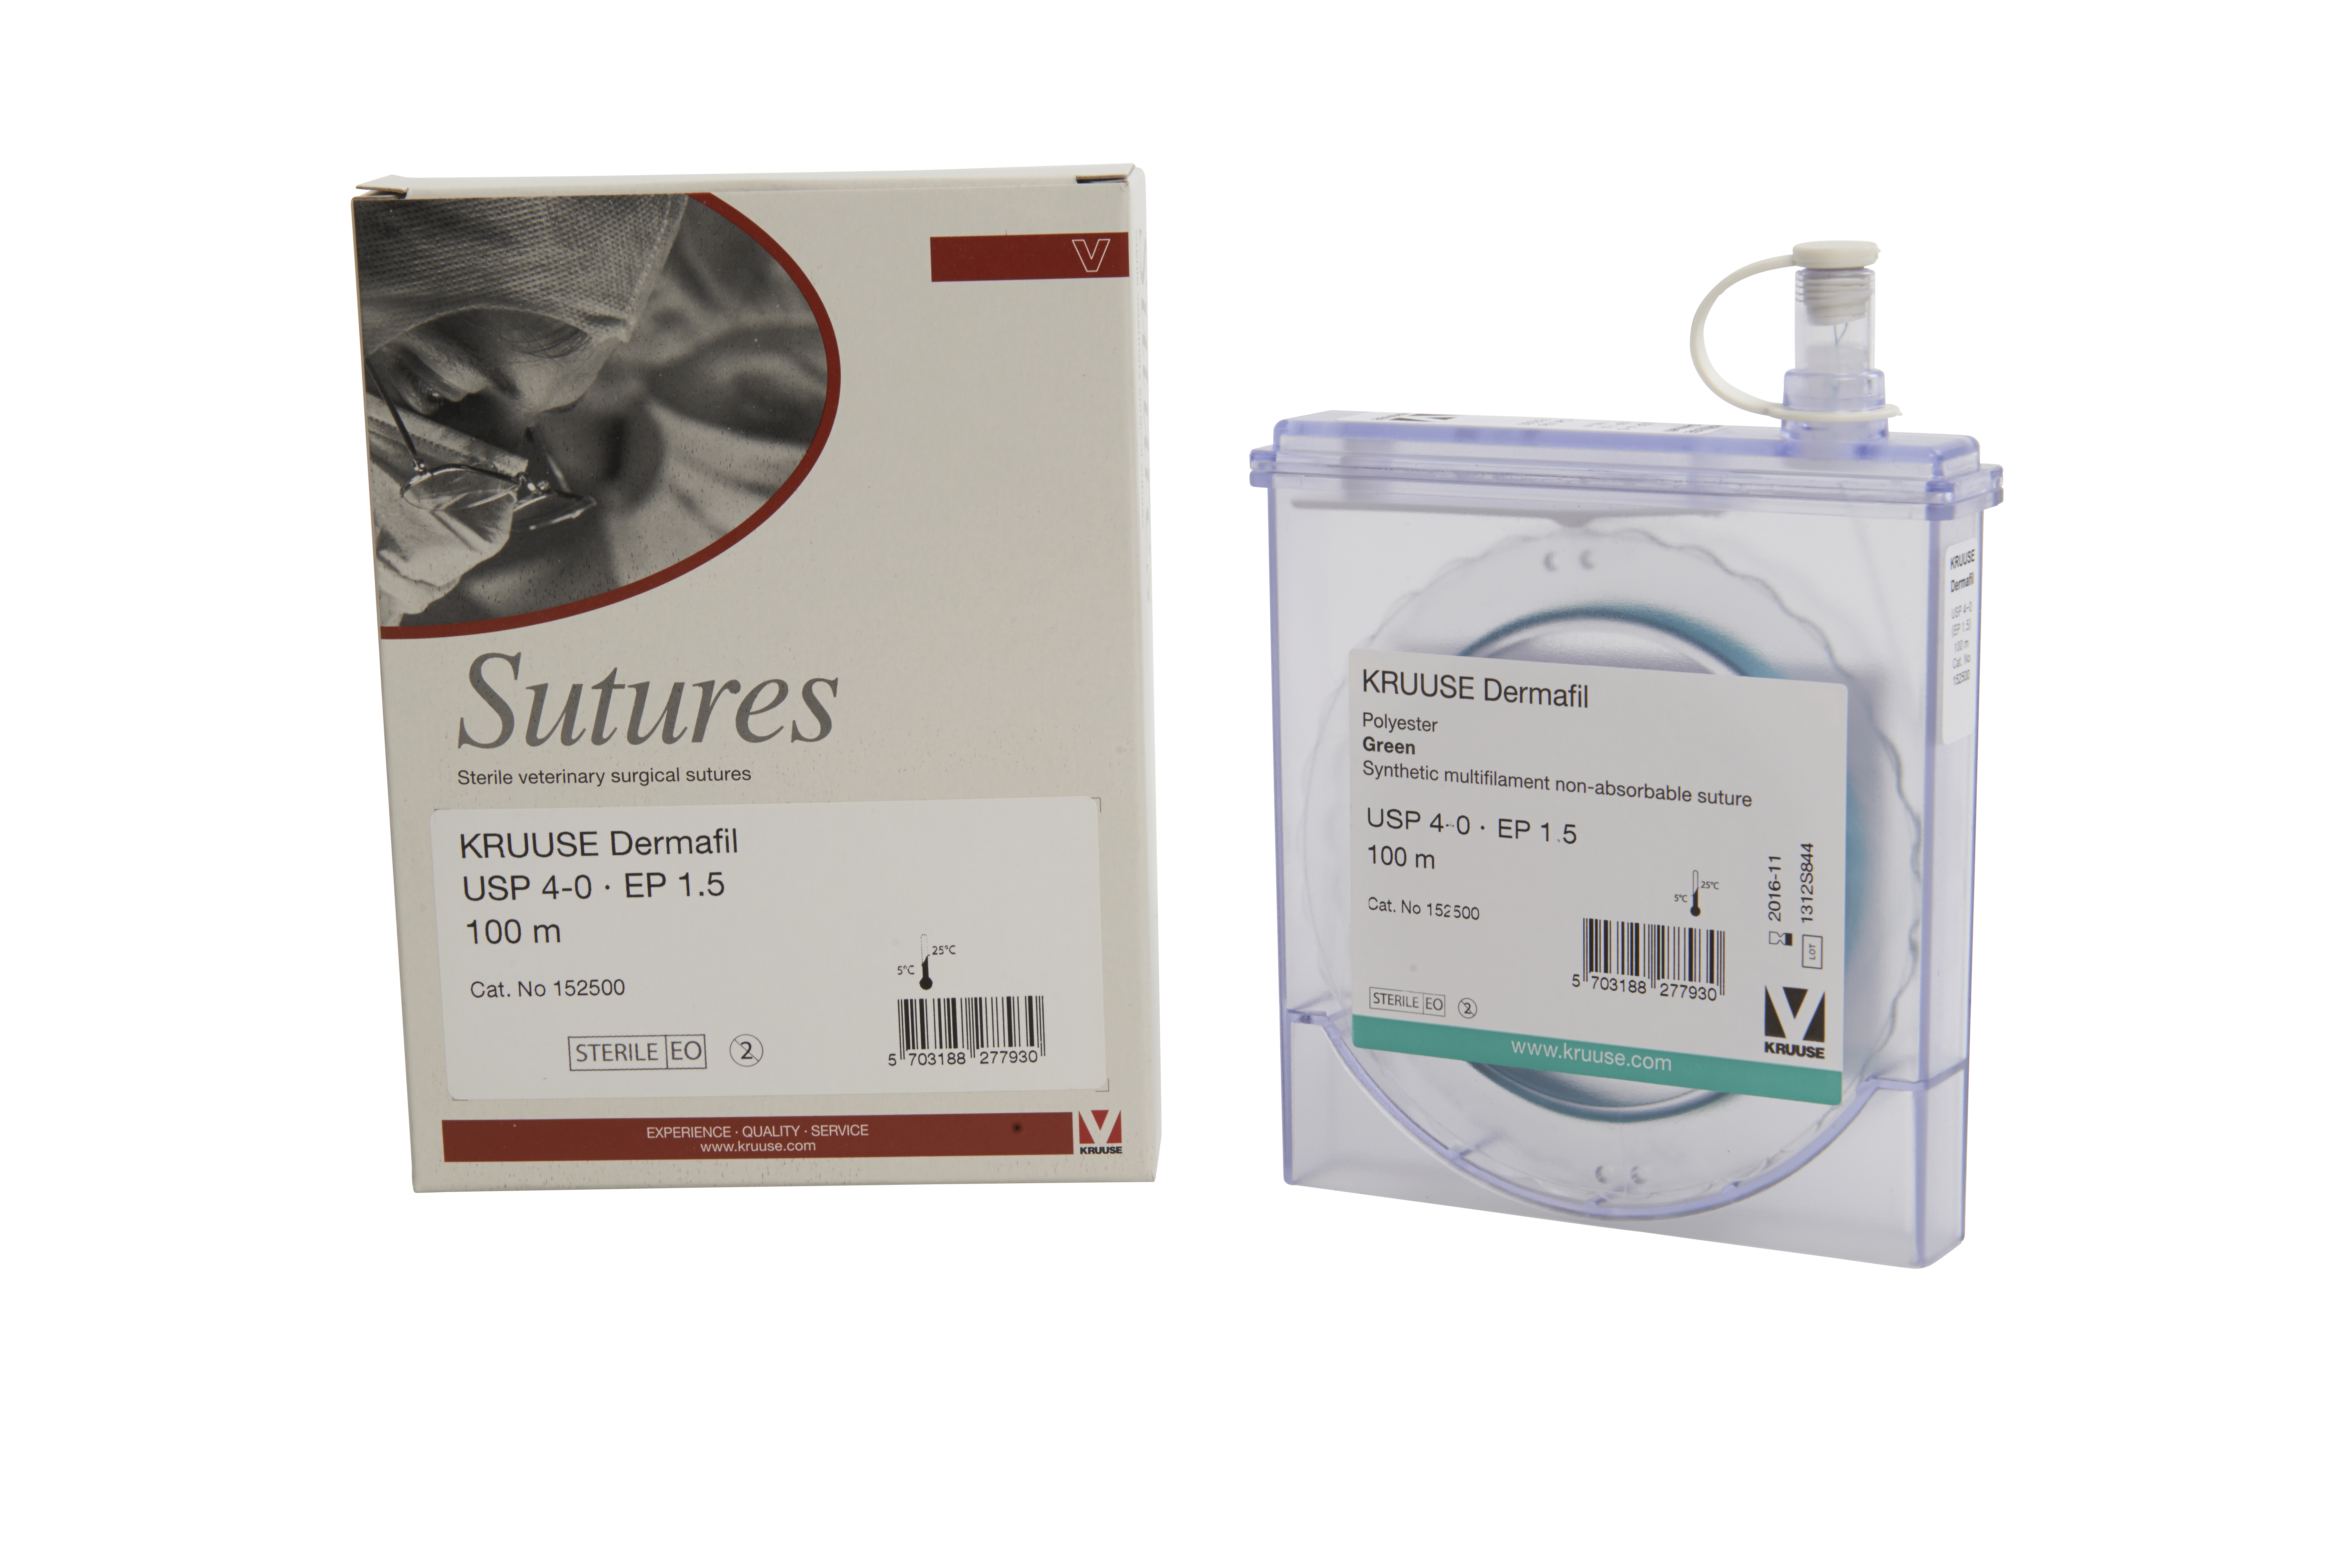 KRUUSE Dermafil suture, USP 4-0, EP 1.5, 100m